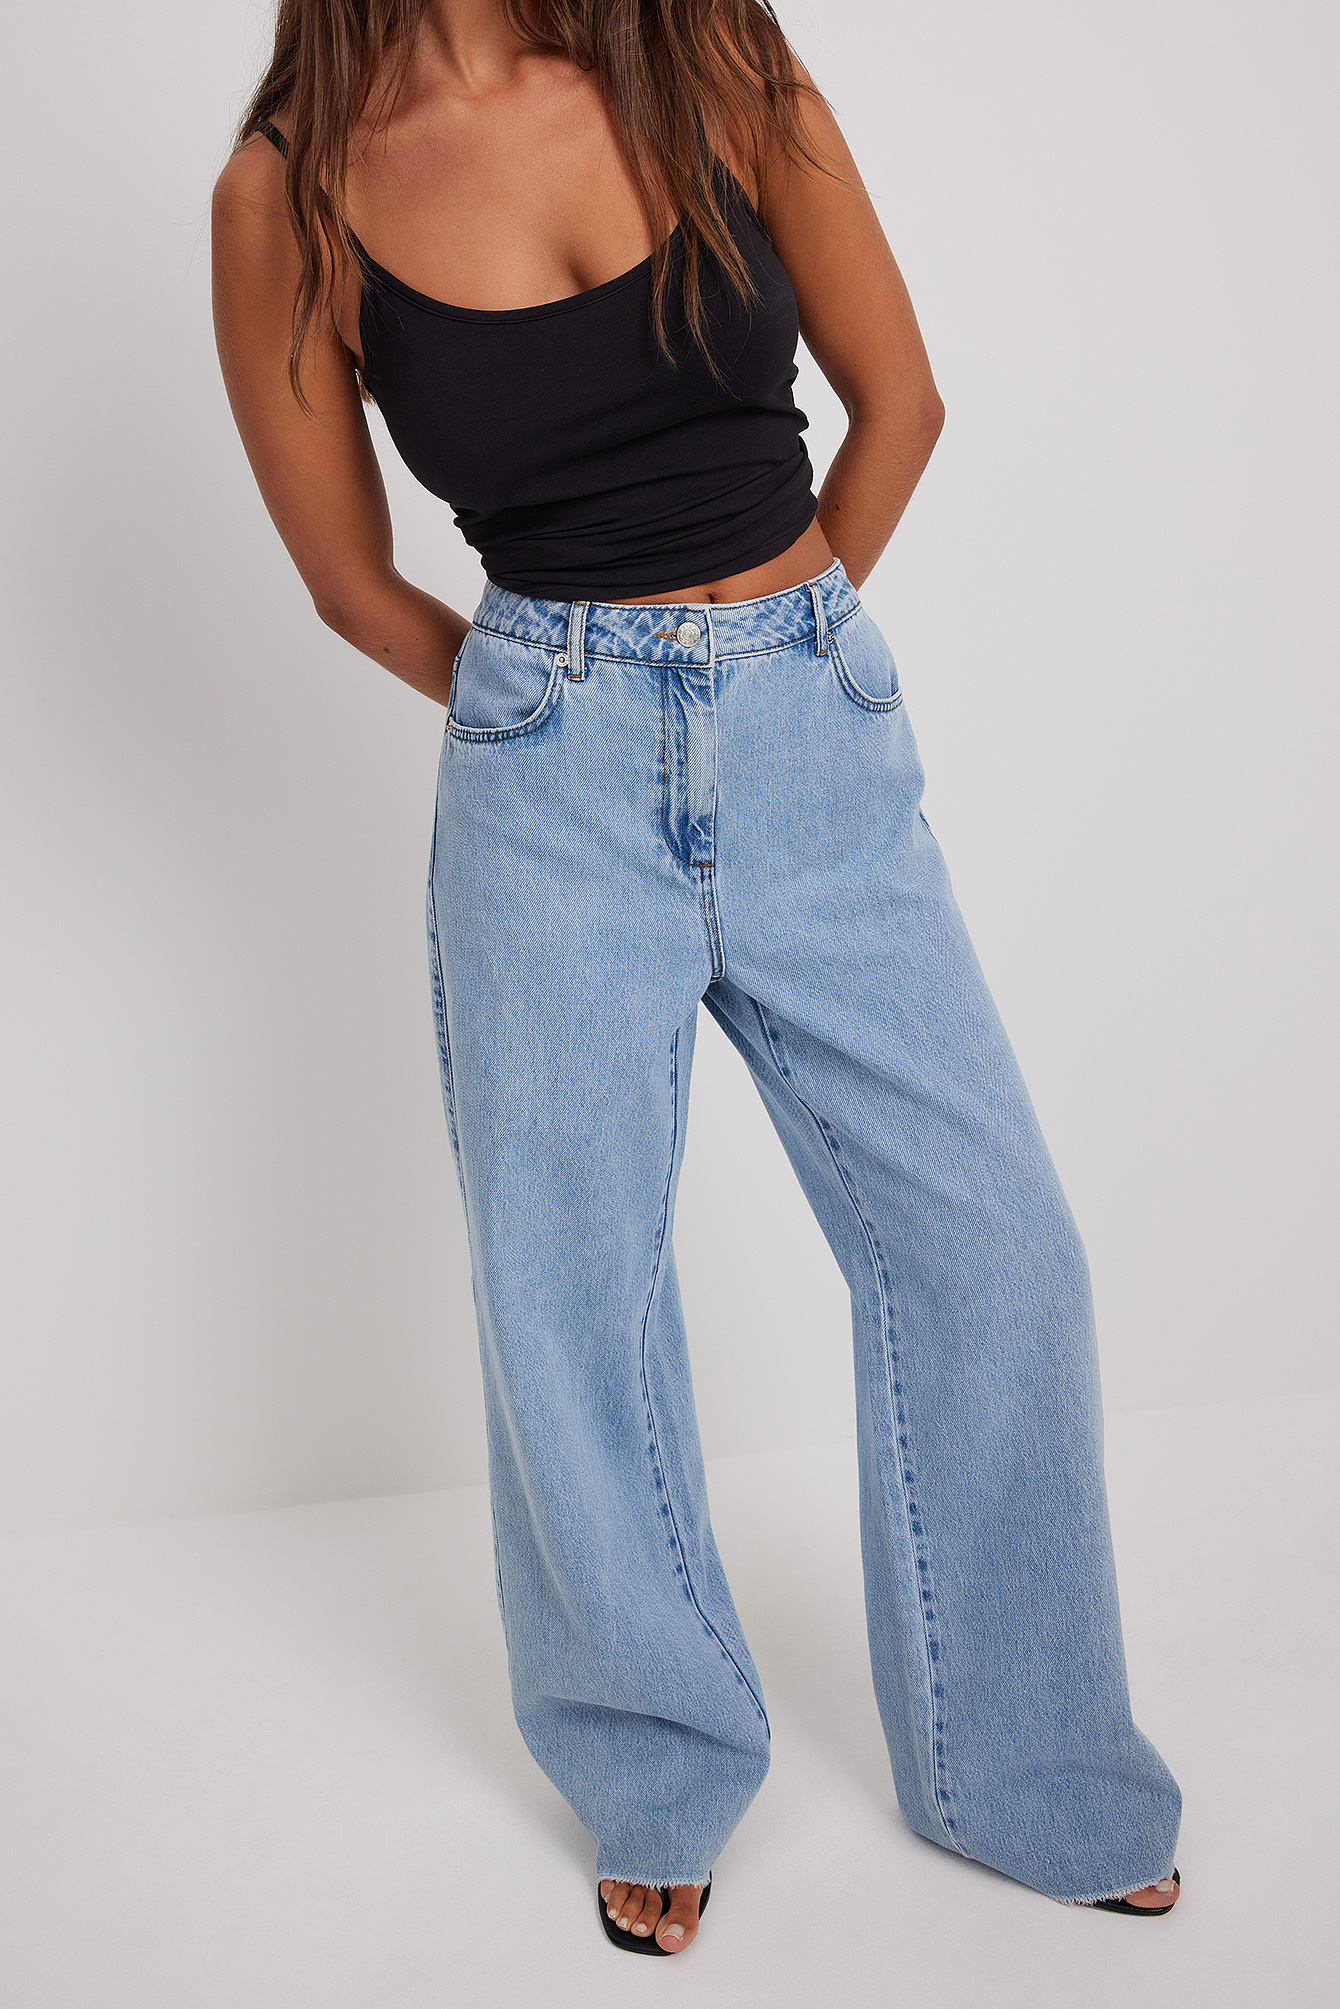 Mode Spijkerbroeken Jeans met rechte pijpen Grüne Erde Gr\u00fcne Erde Jeans met rechte pijpen blauw casual uitstraling 